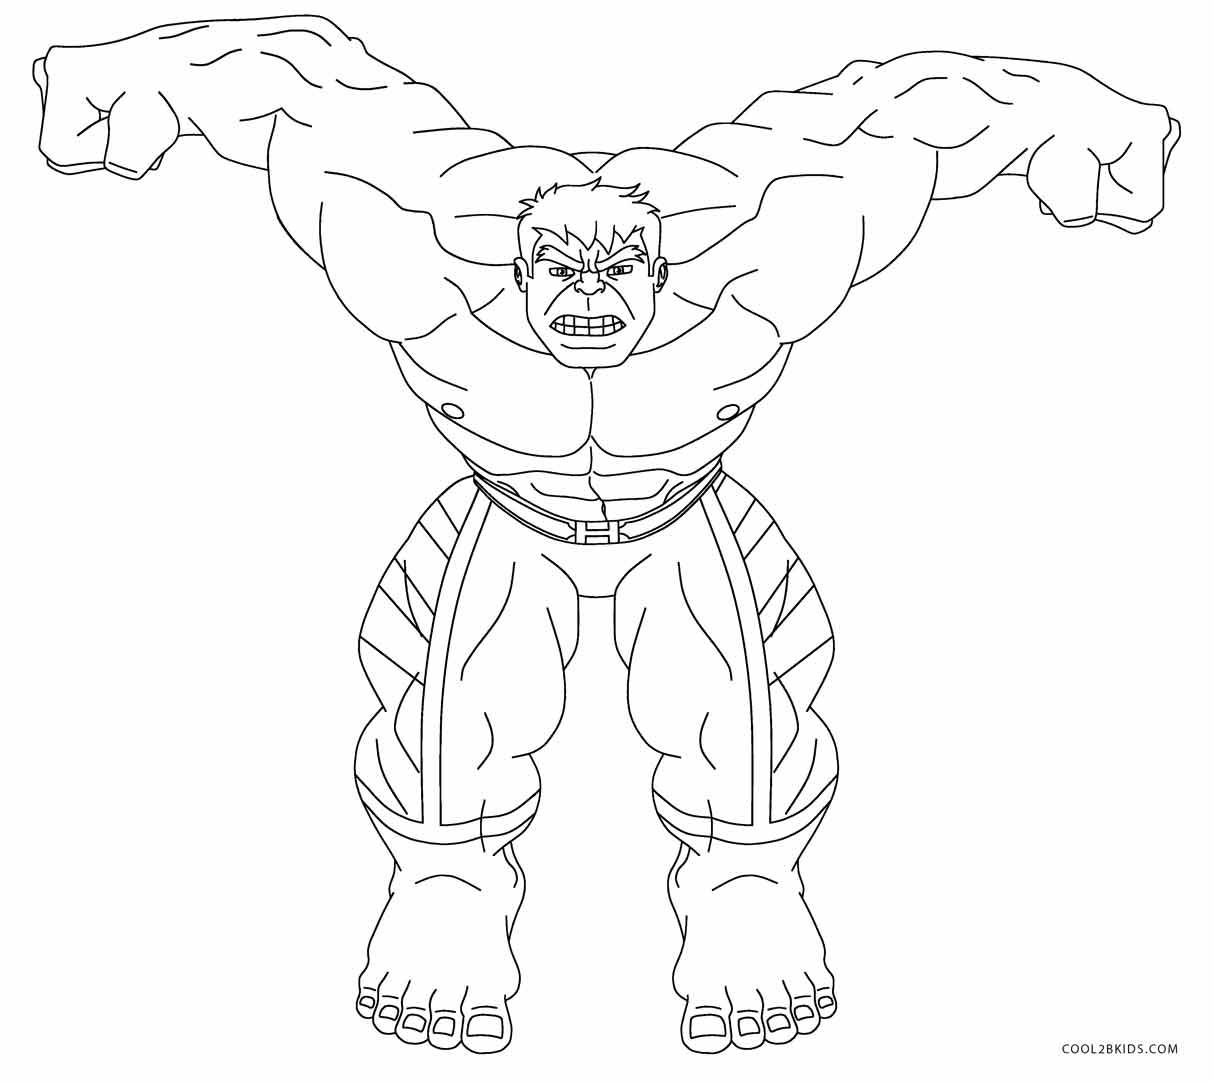 Ausmalbilder Hulk - Malvorlagen kostenlos zum ausdrucken